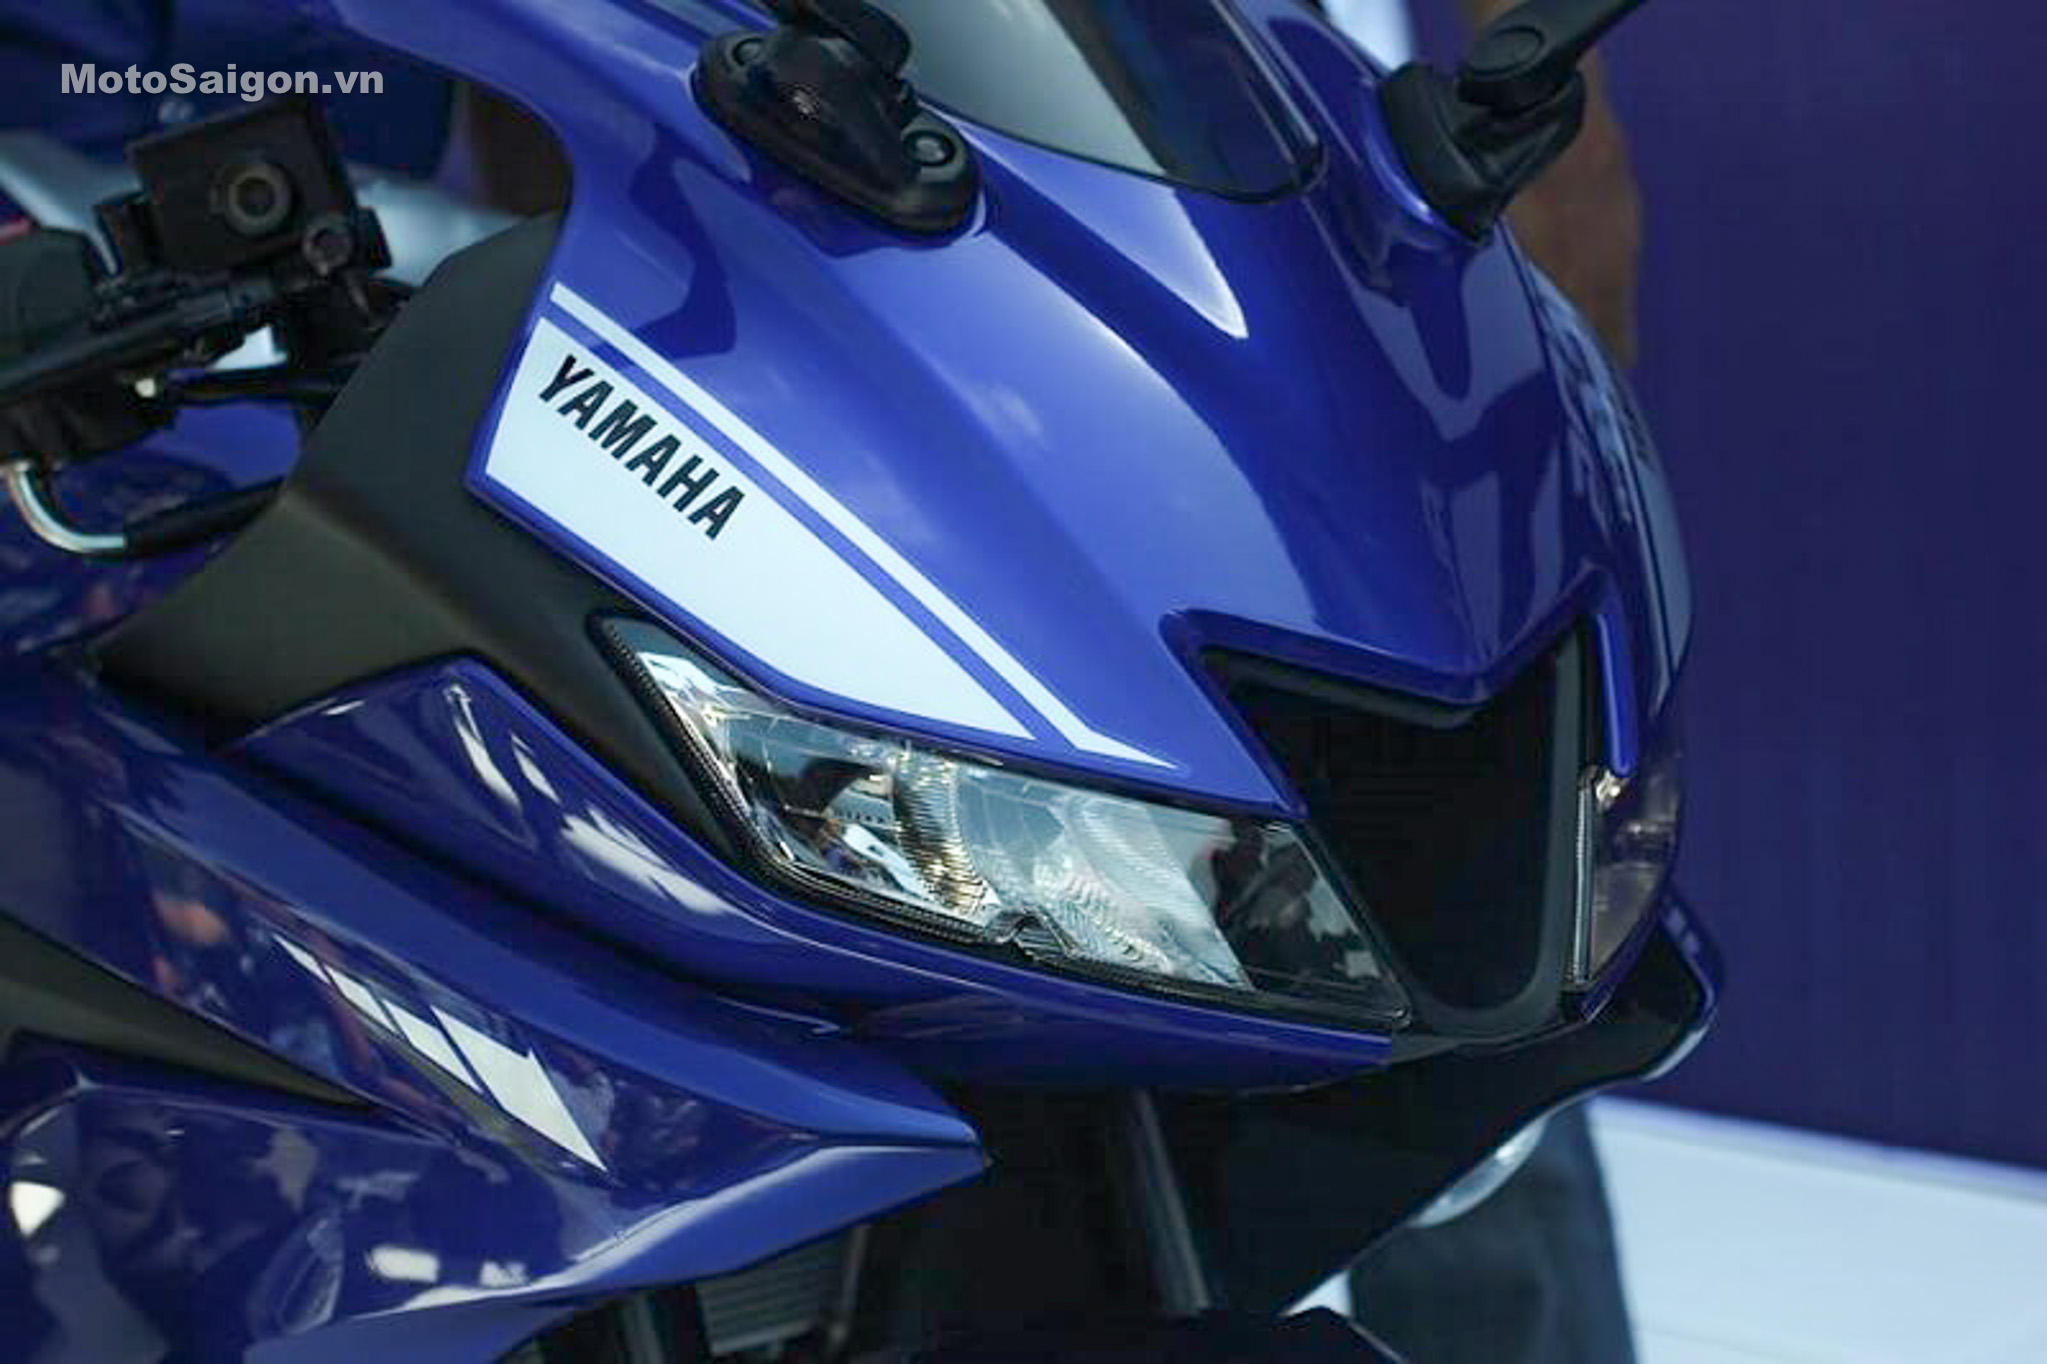 Đánh giá xe Yamaha R15 v3 2017 hình ảnh thông số giá bán - Motosaigon